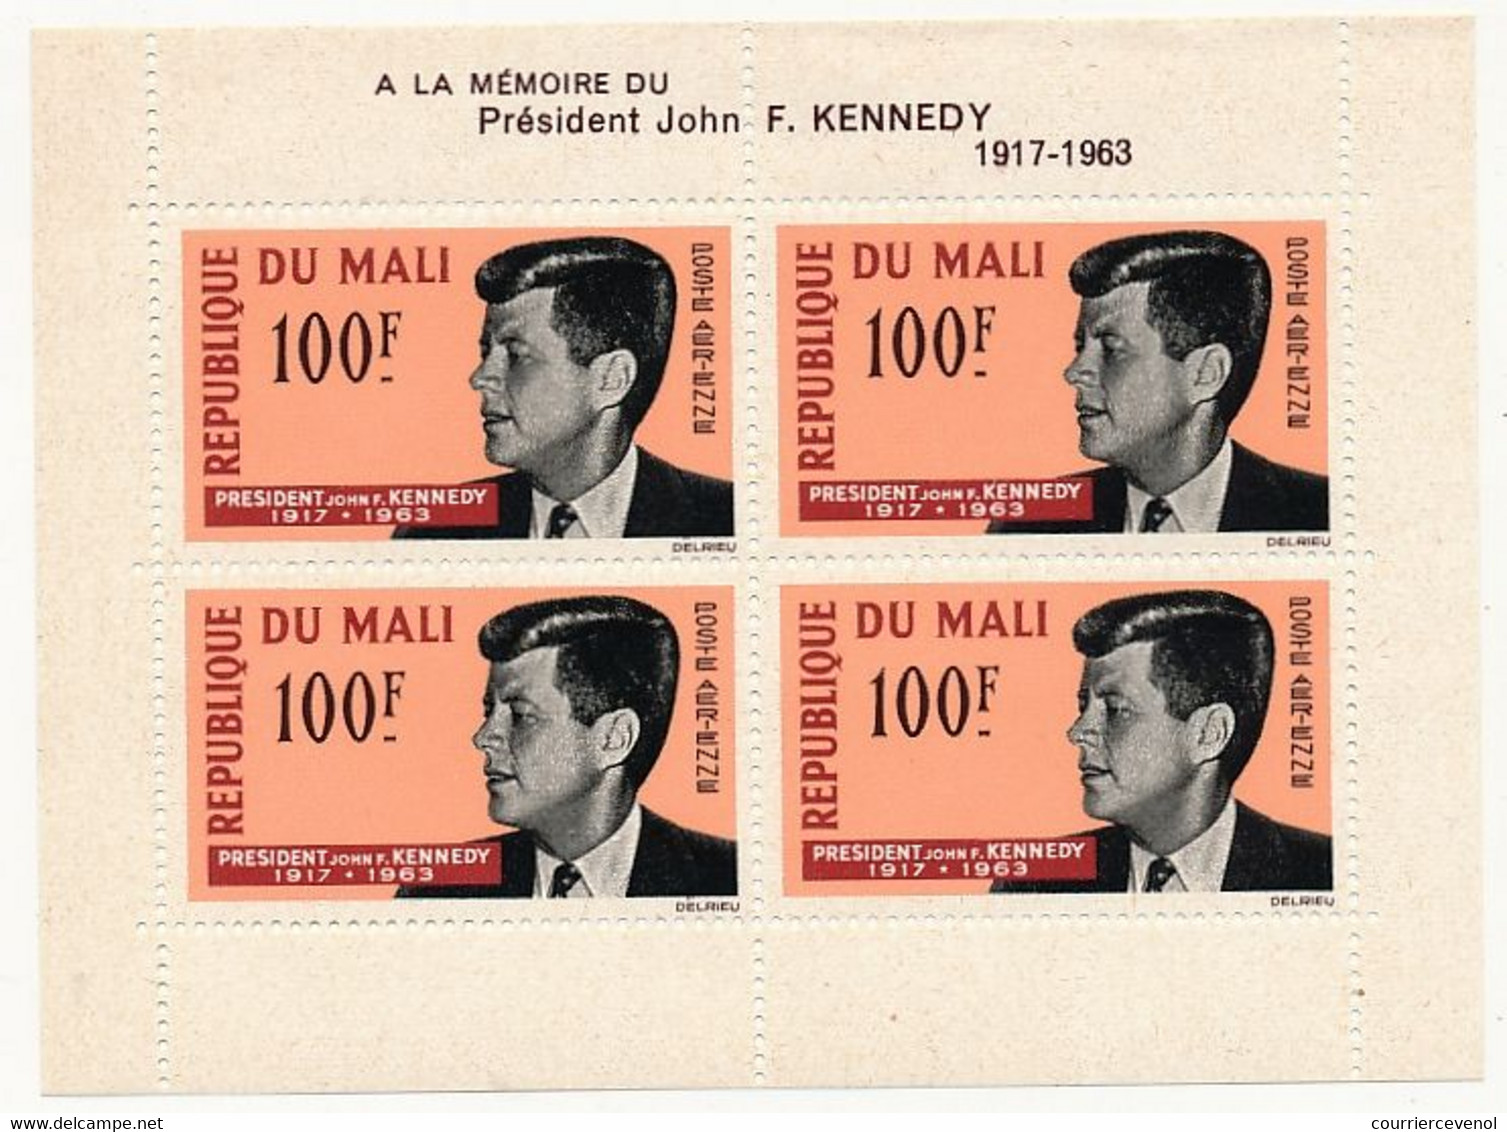 AFRIQUE Francophone - 10 blocs de 4 (Feuillets) A la Mémoire de J.F. Kennedy - Neufs - 8 Etat SUP, 2 état TB